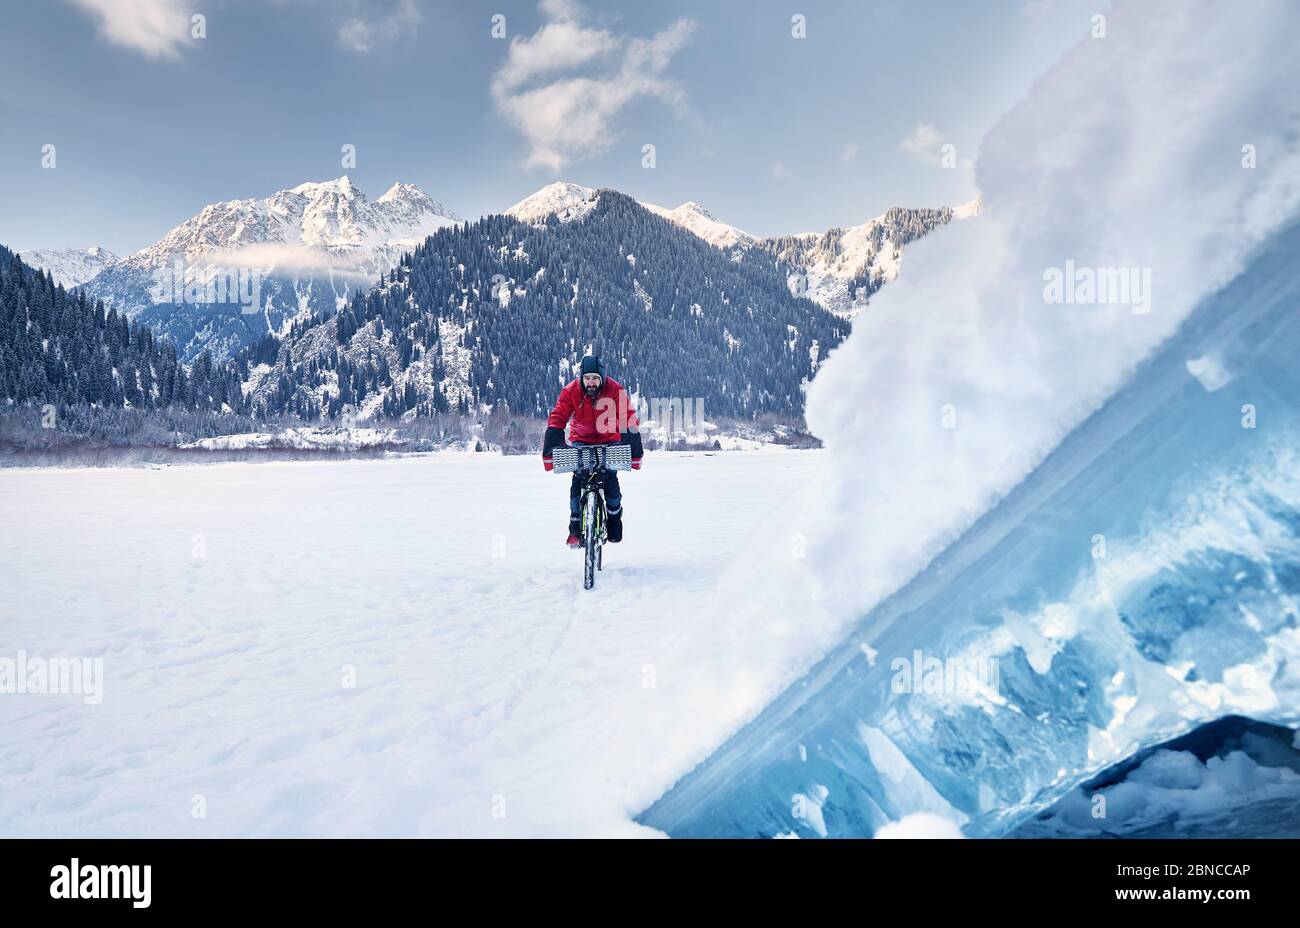 Hombre con chaqueta roja está montando su bicicleta en el lago congelado con hielo azul en primer plano en las montañas nevadas al fondo Foto de stock